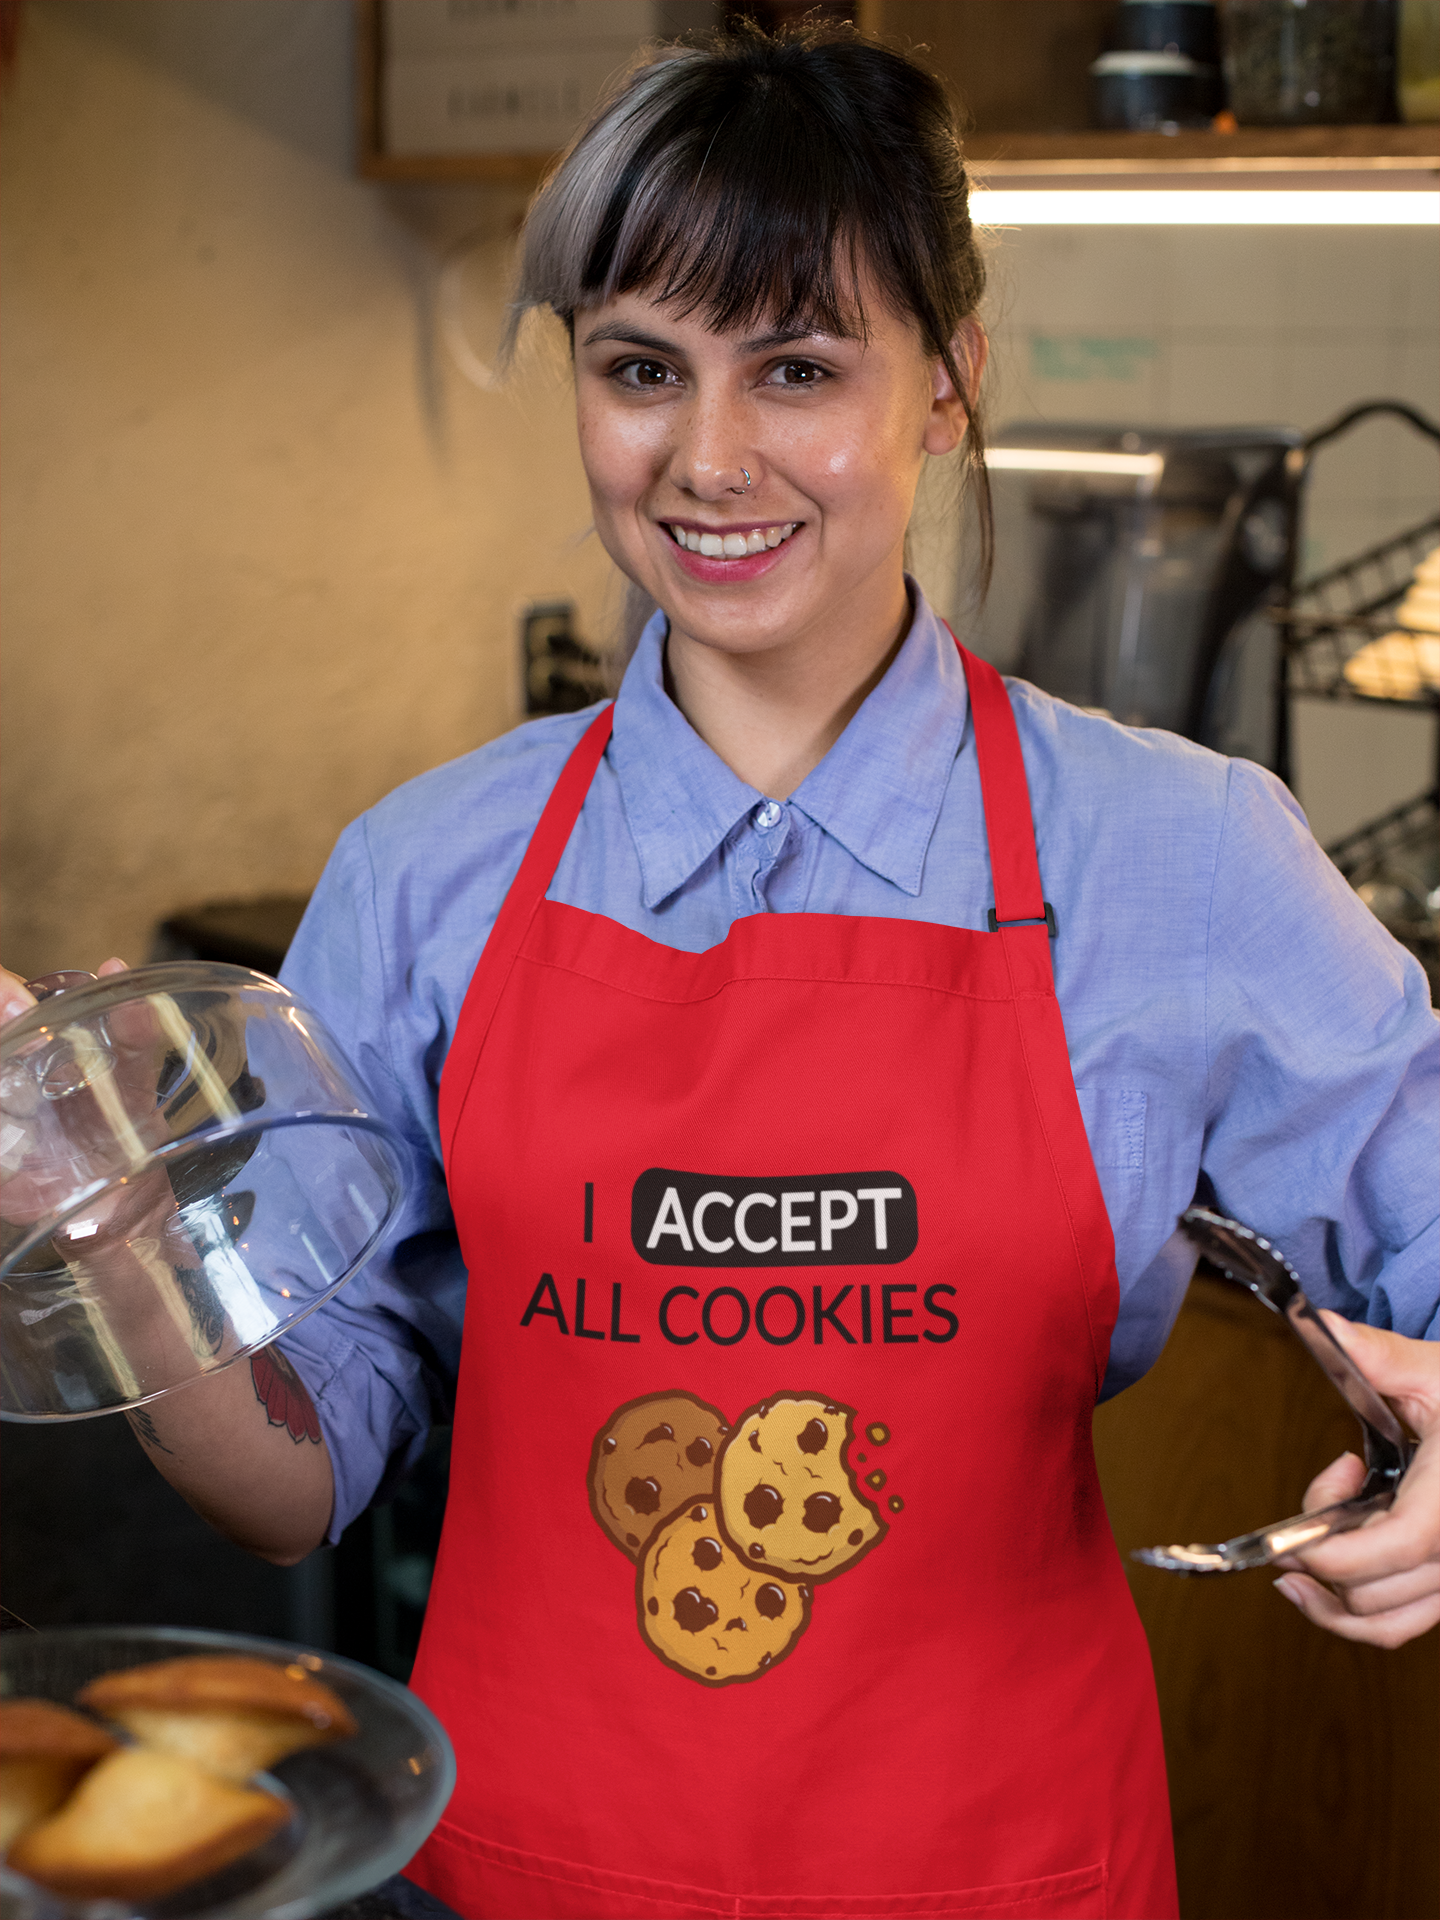 "I accept all cookies" - Kochschürze